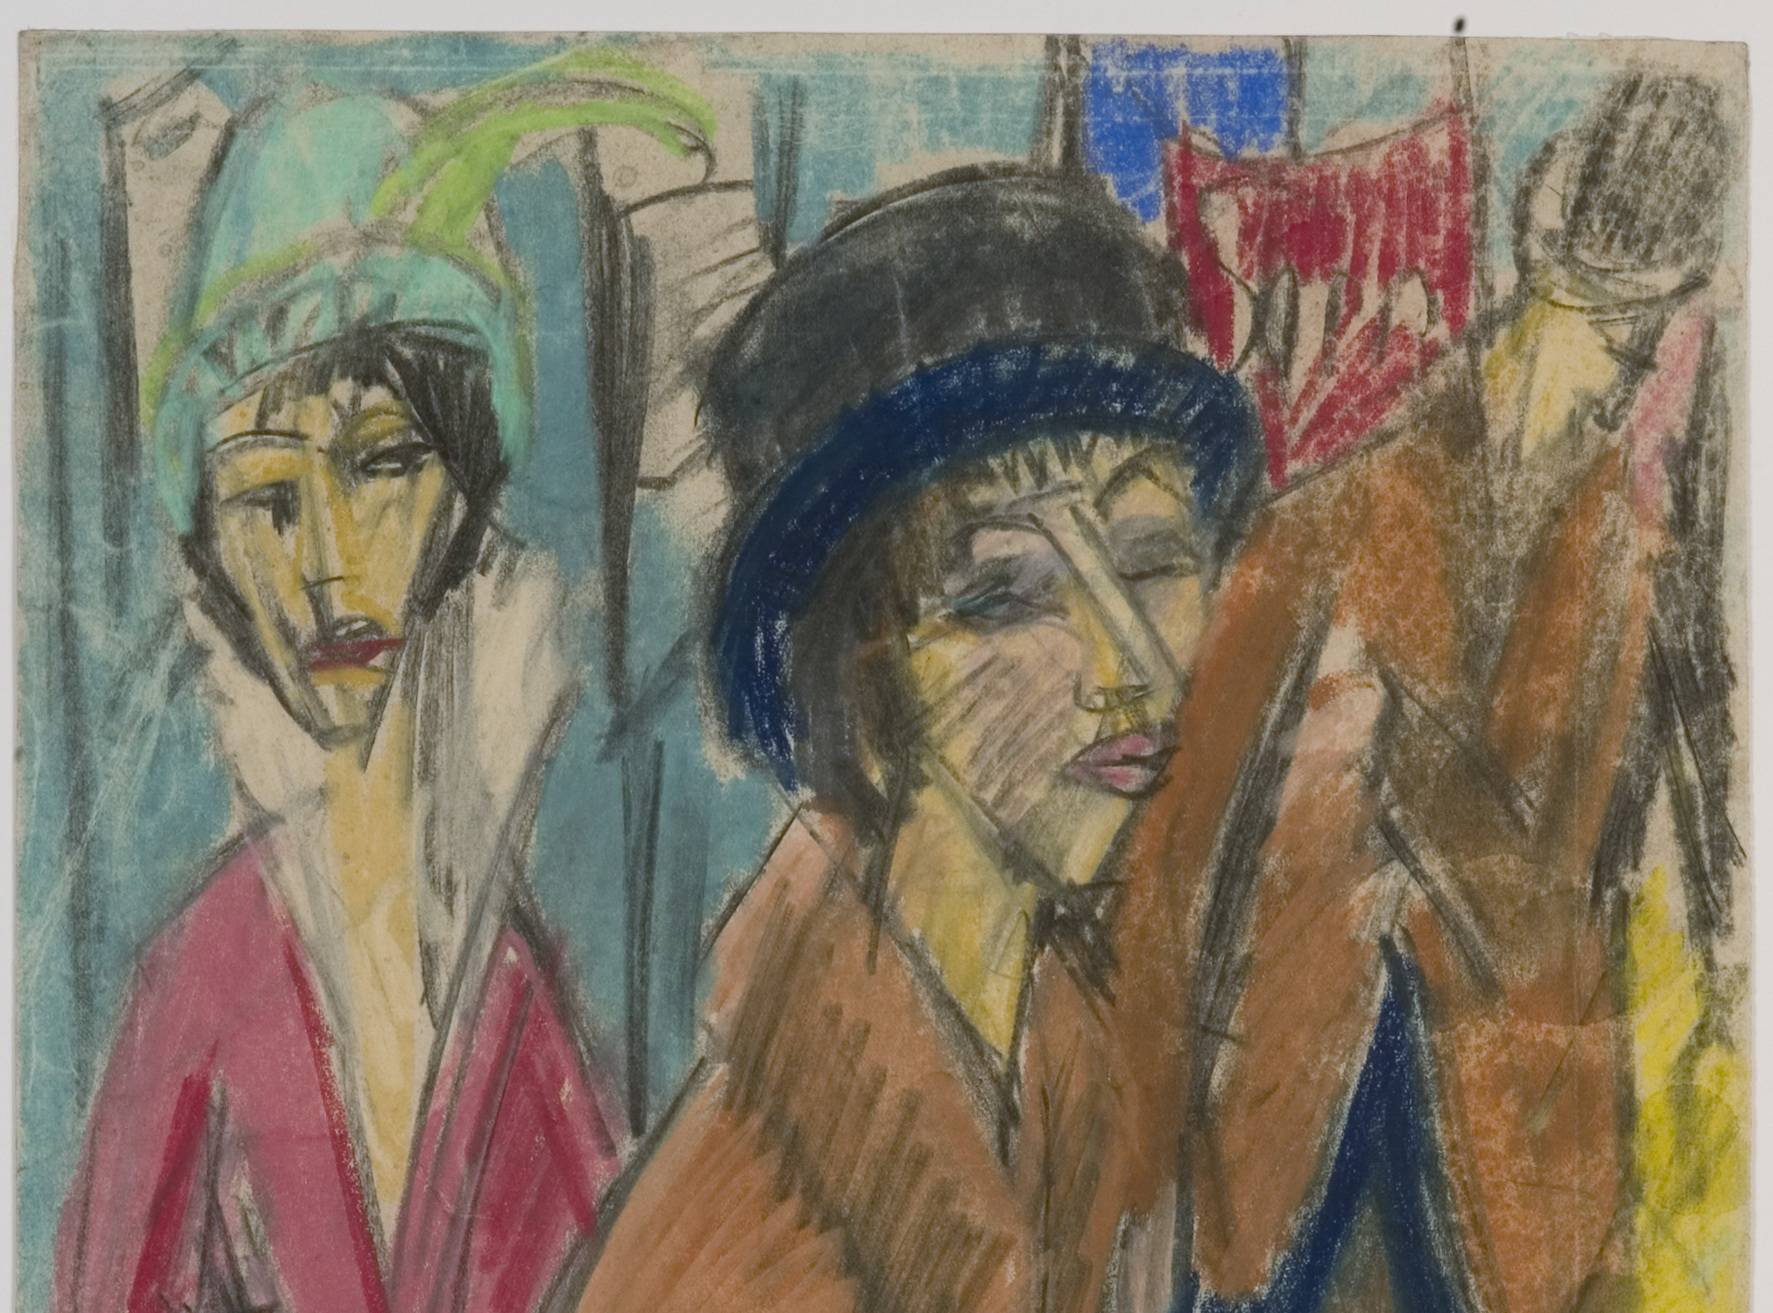  Ernst Ludwig Kirchner, Frauen auf der Straße, 1913/14. 